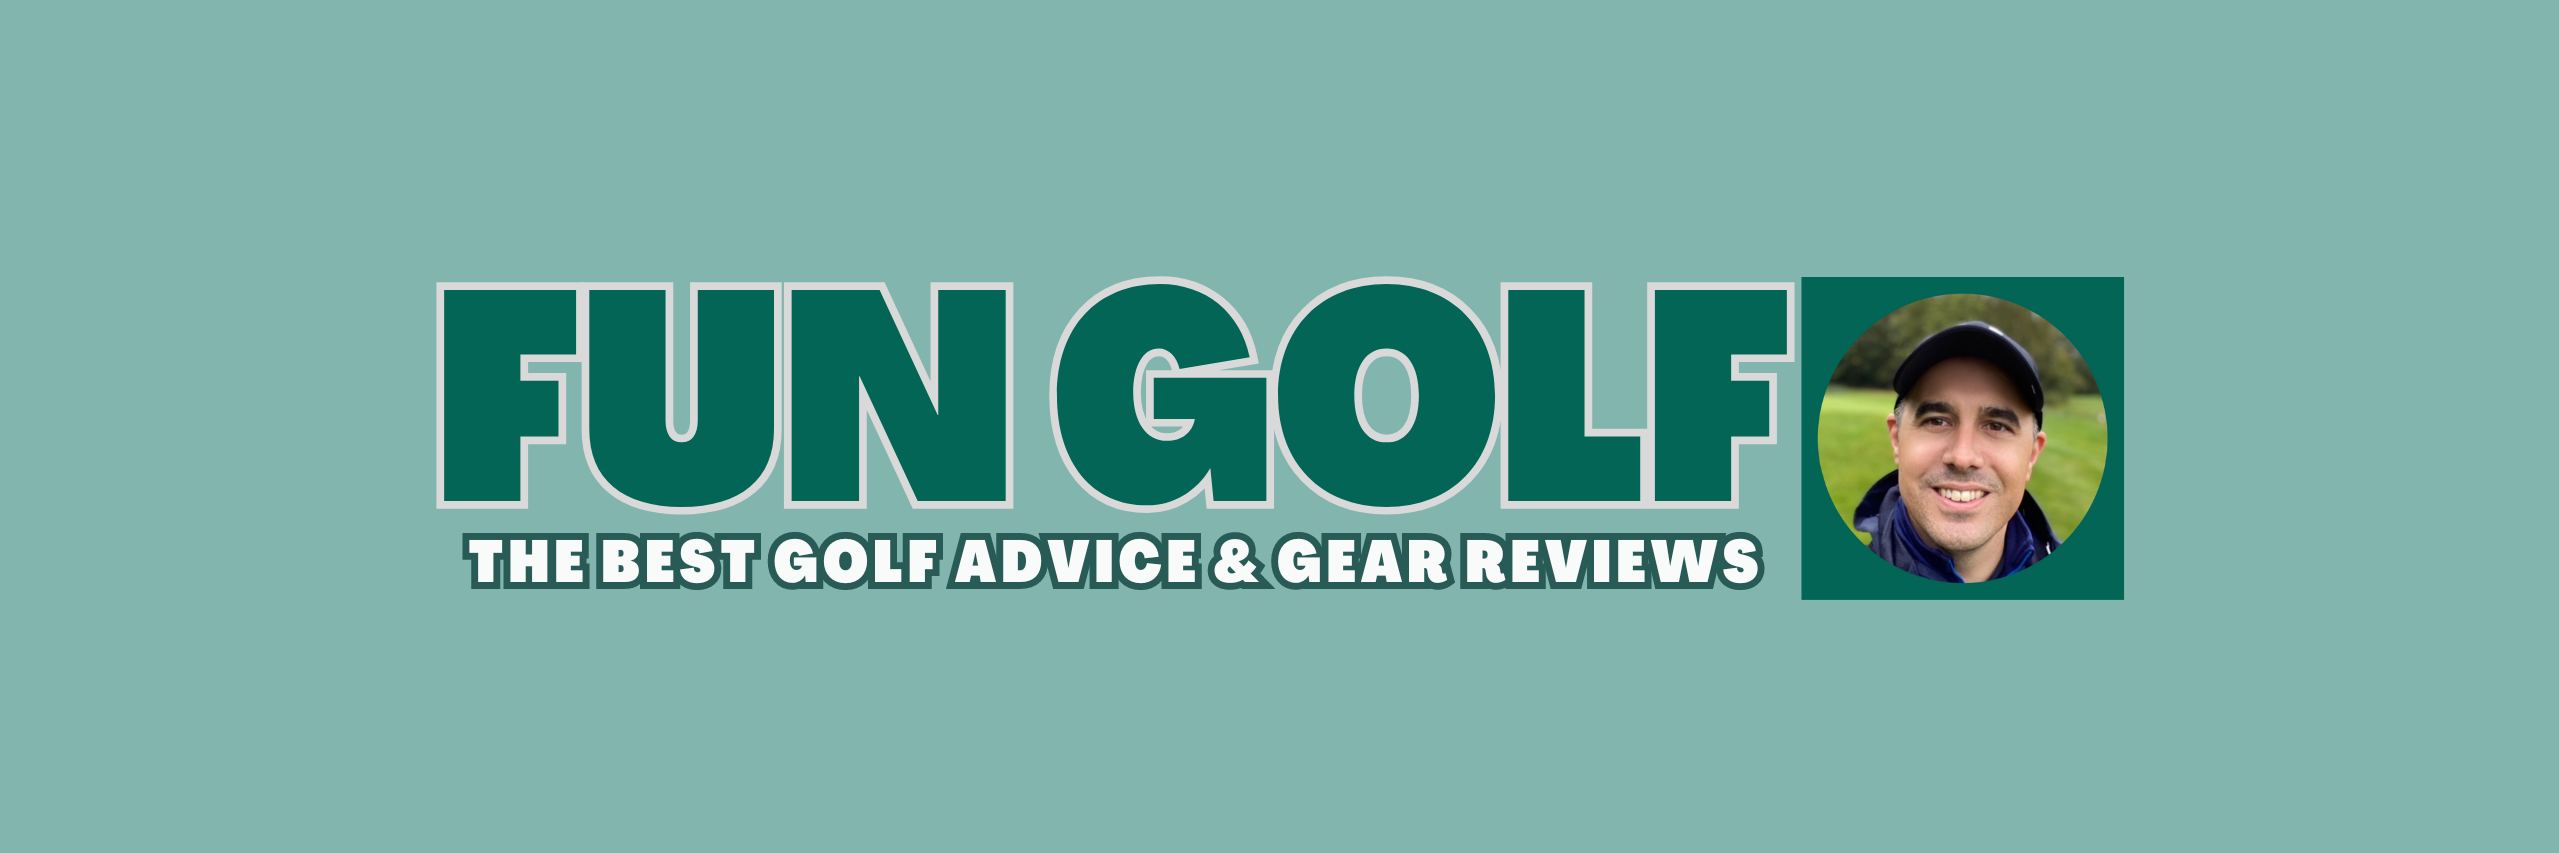 fun golf craig logo banner